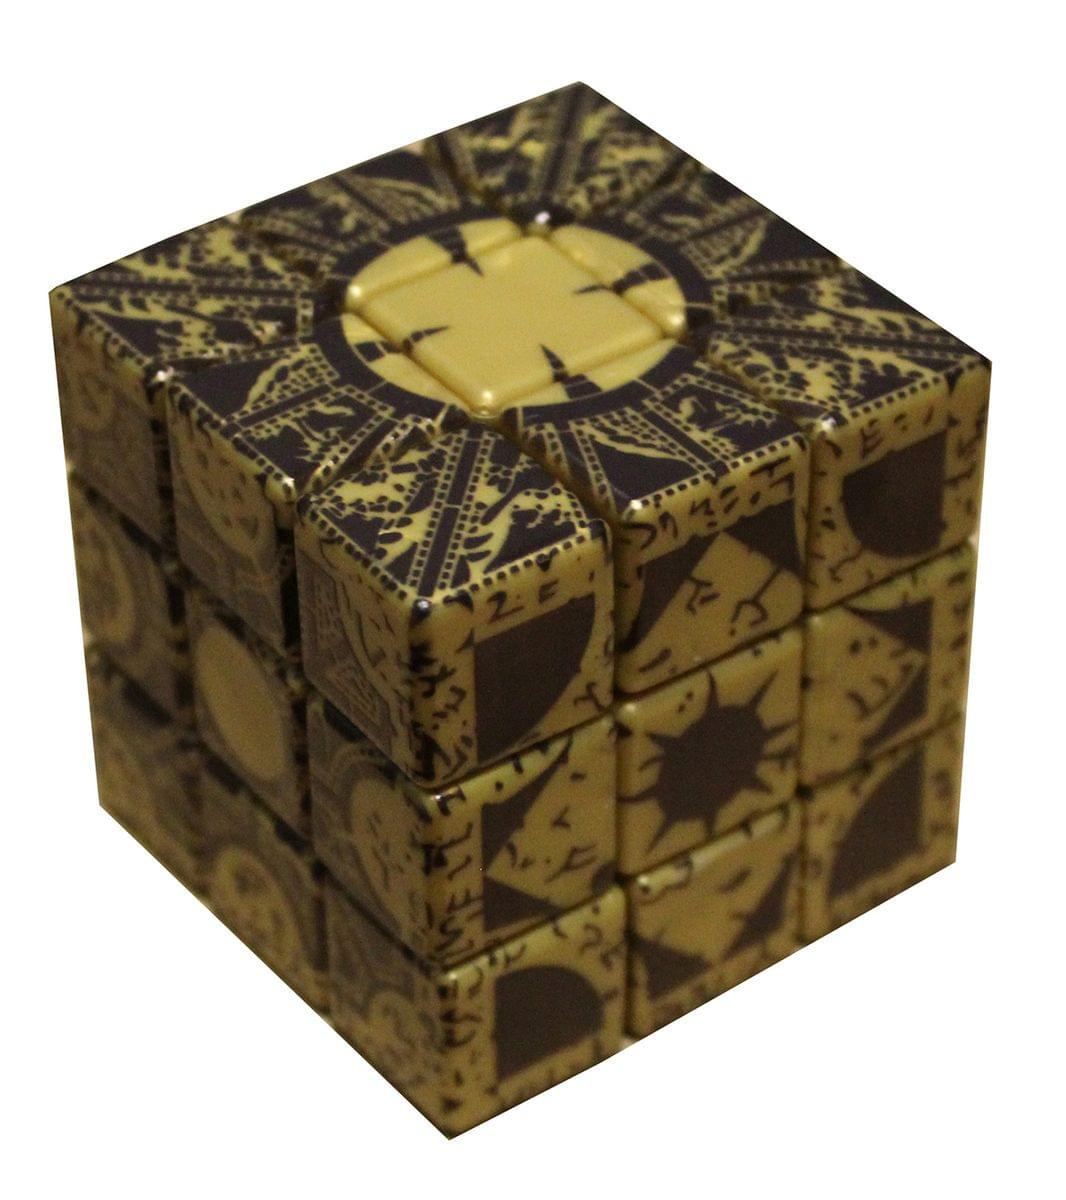 Hellraiser Lament Configuration Puzzle Cube